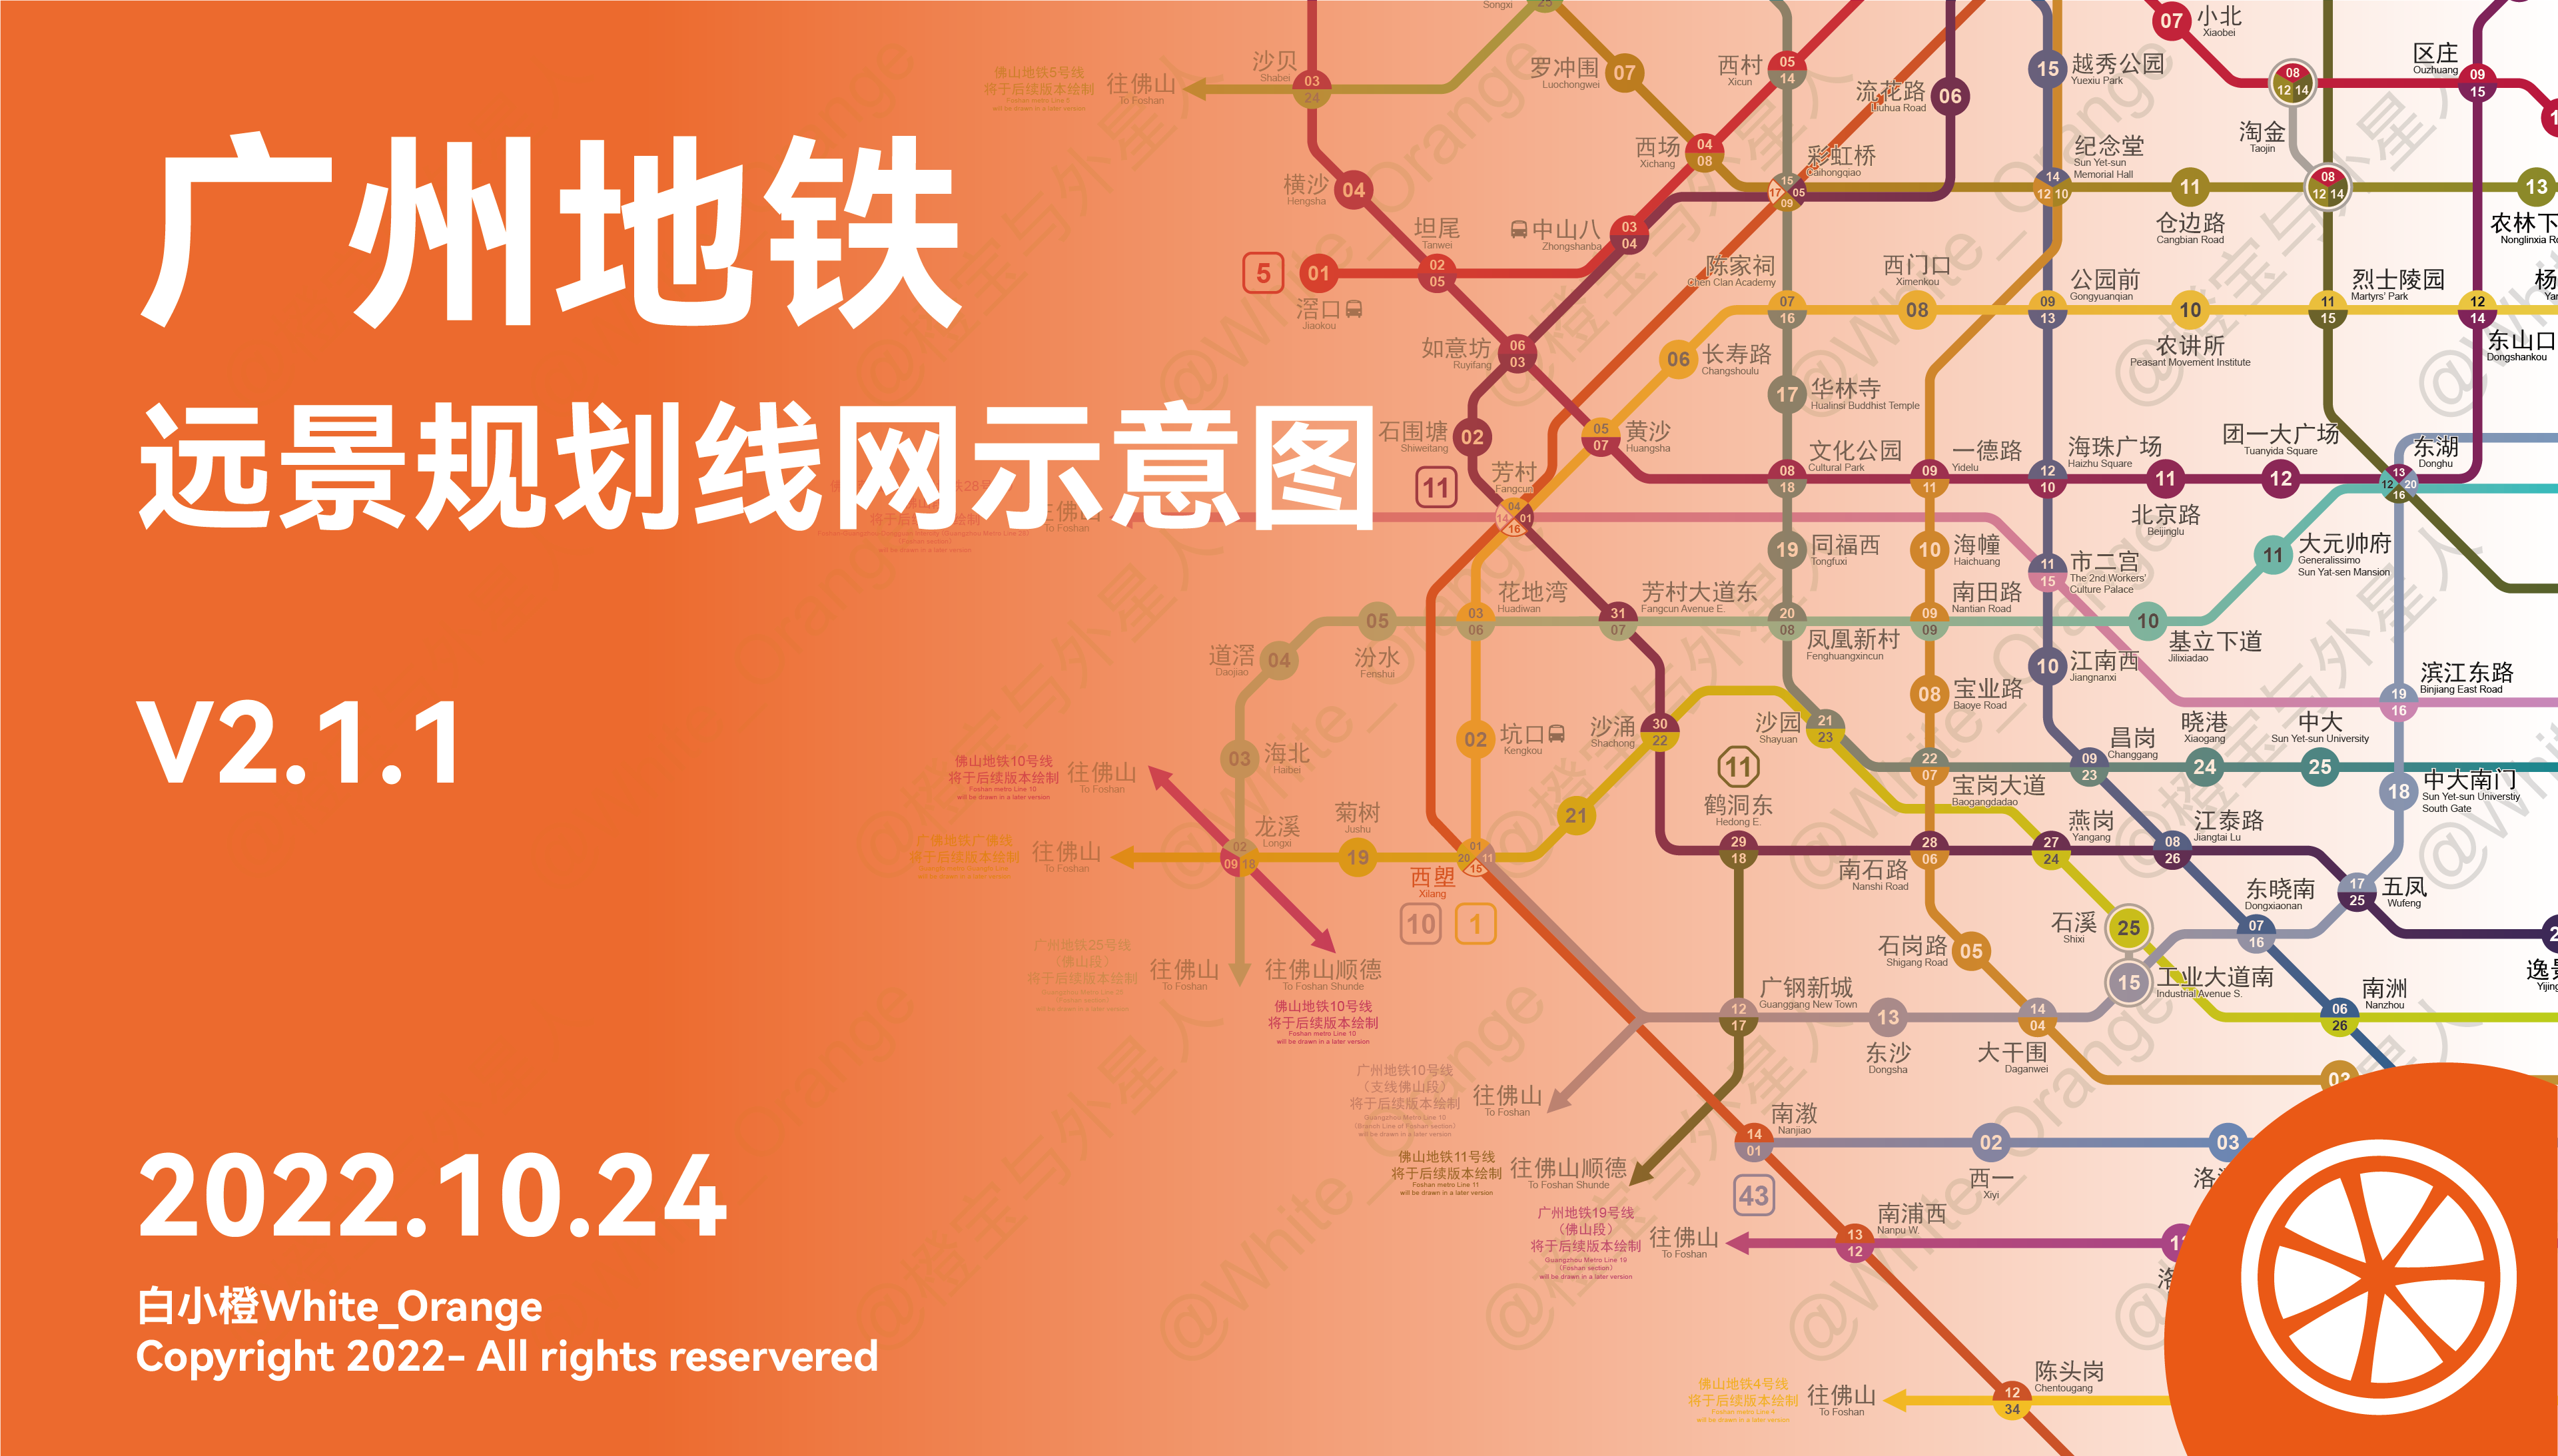 广州地铁高清版线路图（2017年最新） - 地铁查询网